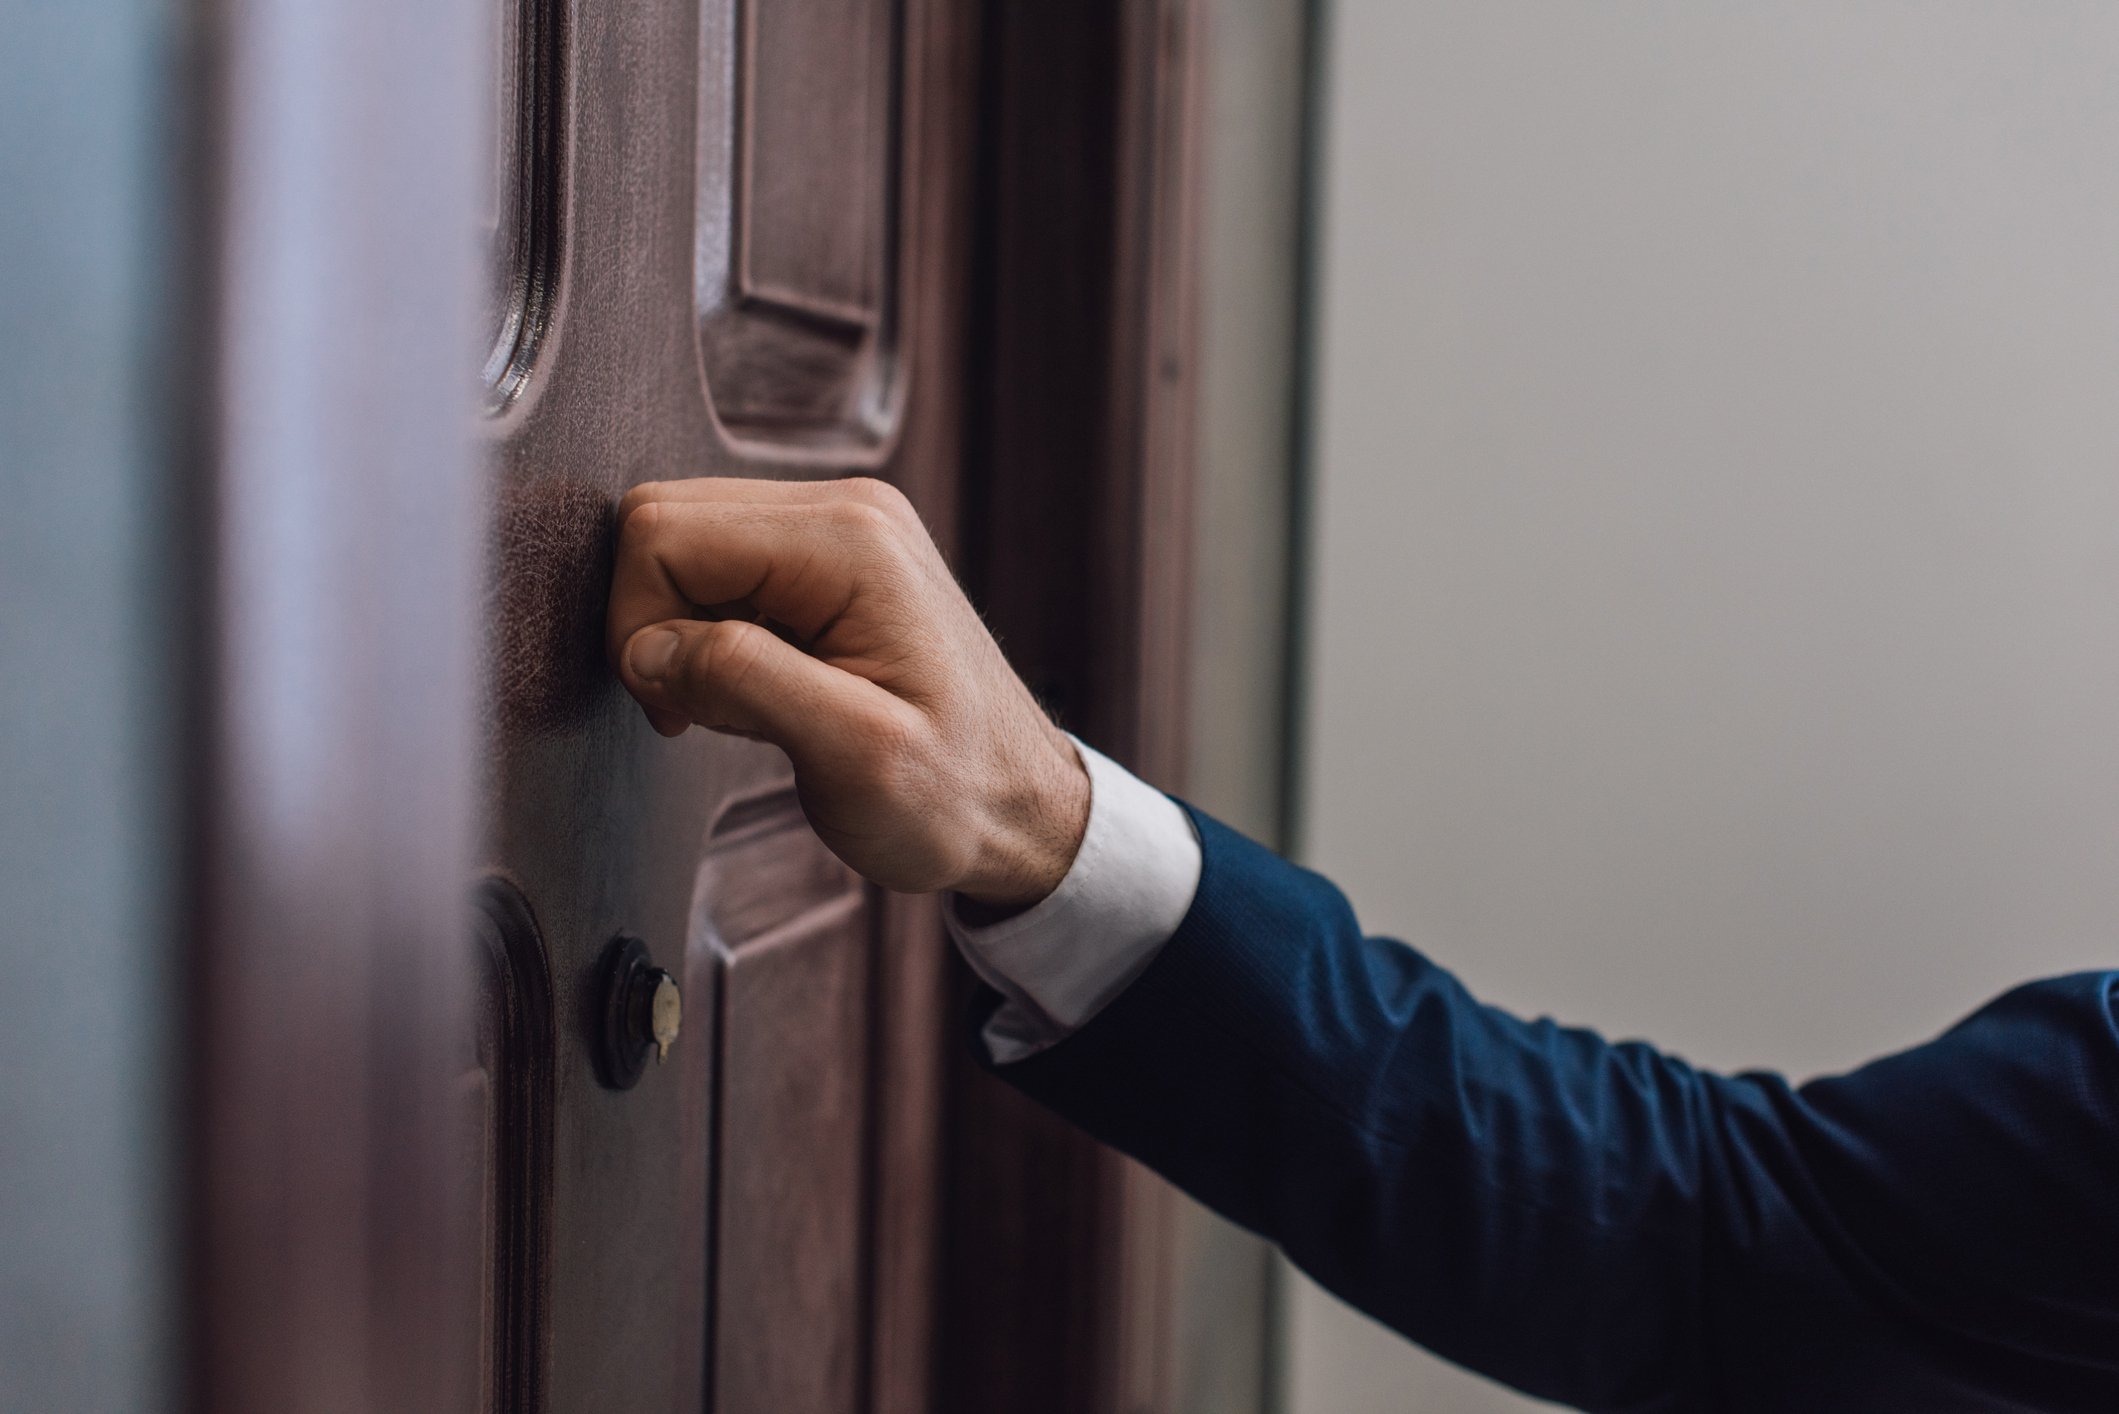 Beschnittene Ansicht des Mannes, der mit der Hand an die Tür klopft  | Quelle: Getty Images